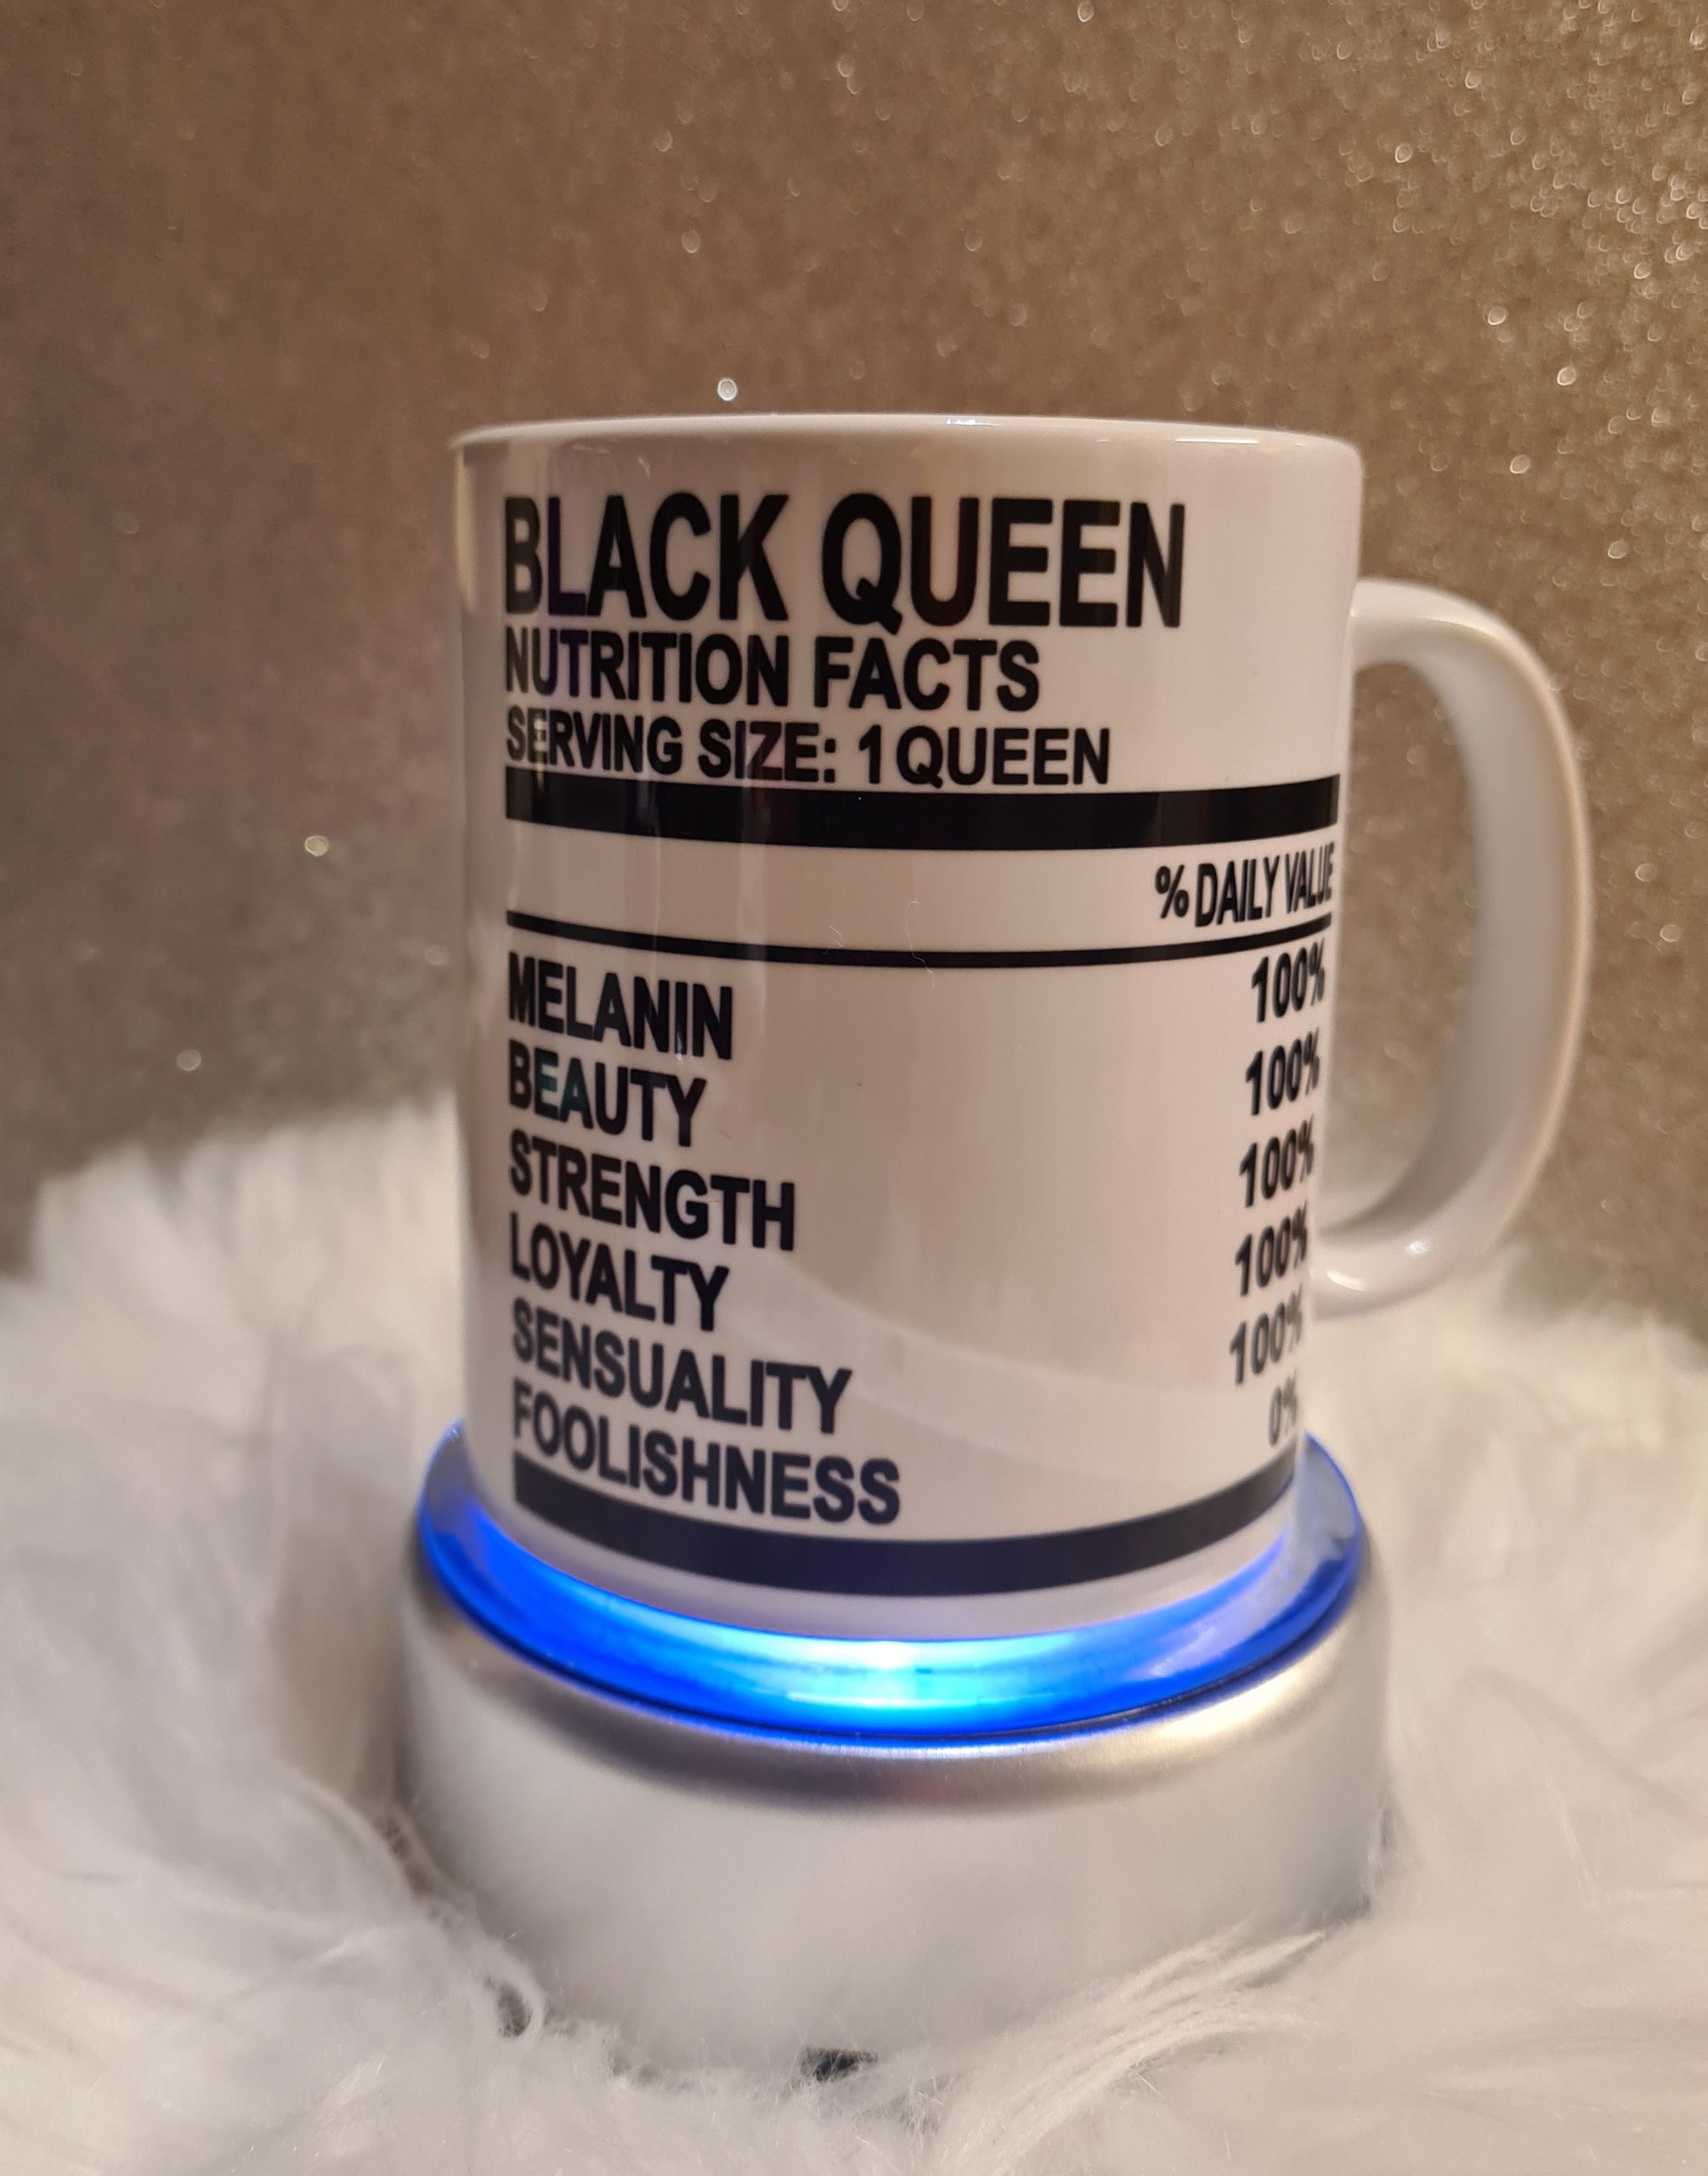 Black Queen nutrional facts